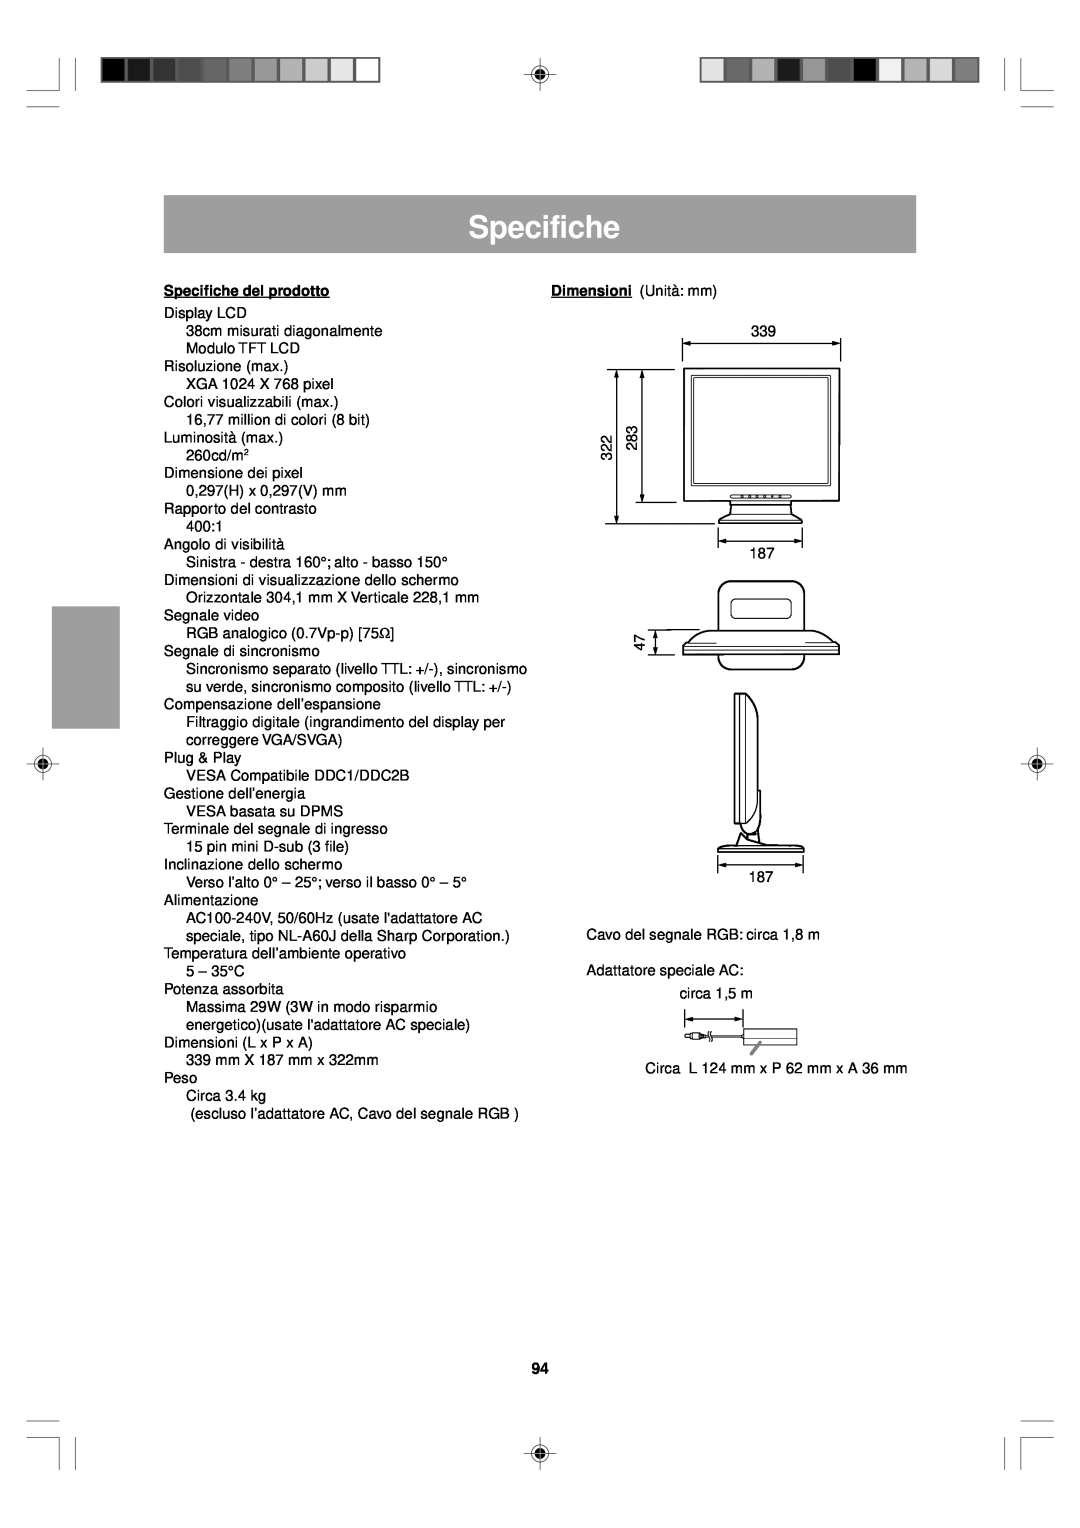 Sharp LL-T15V1 operation manual Specifiche del prodotto 